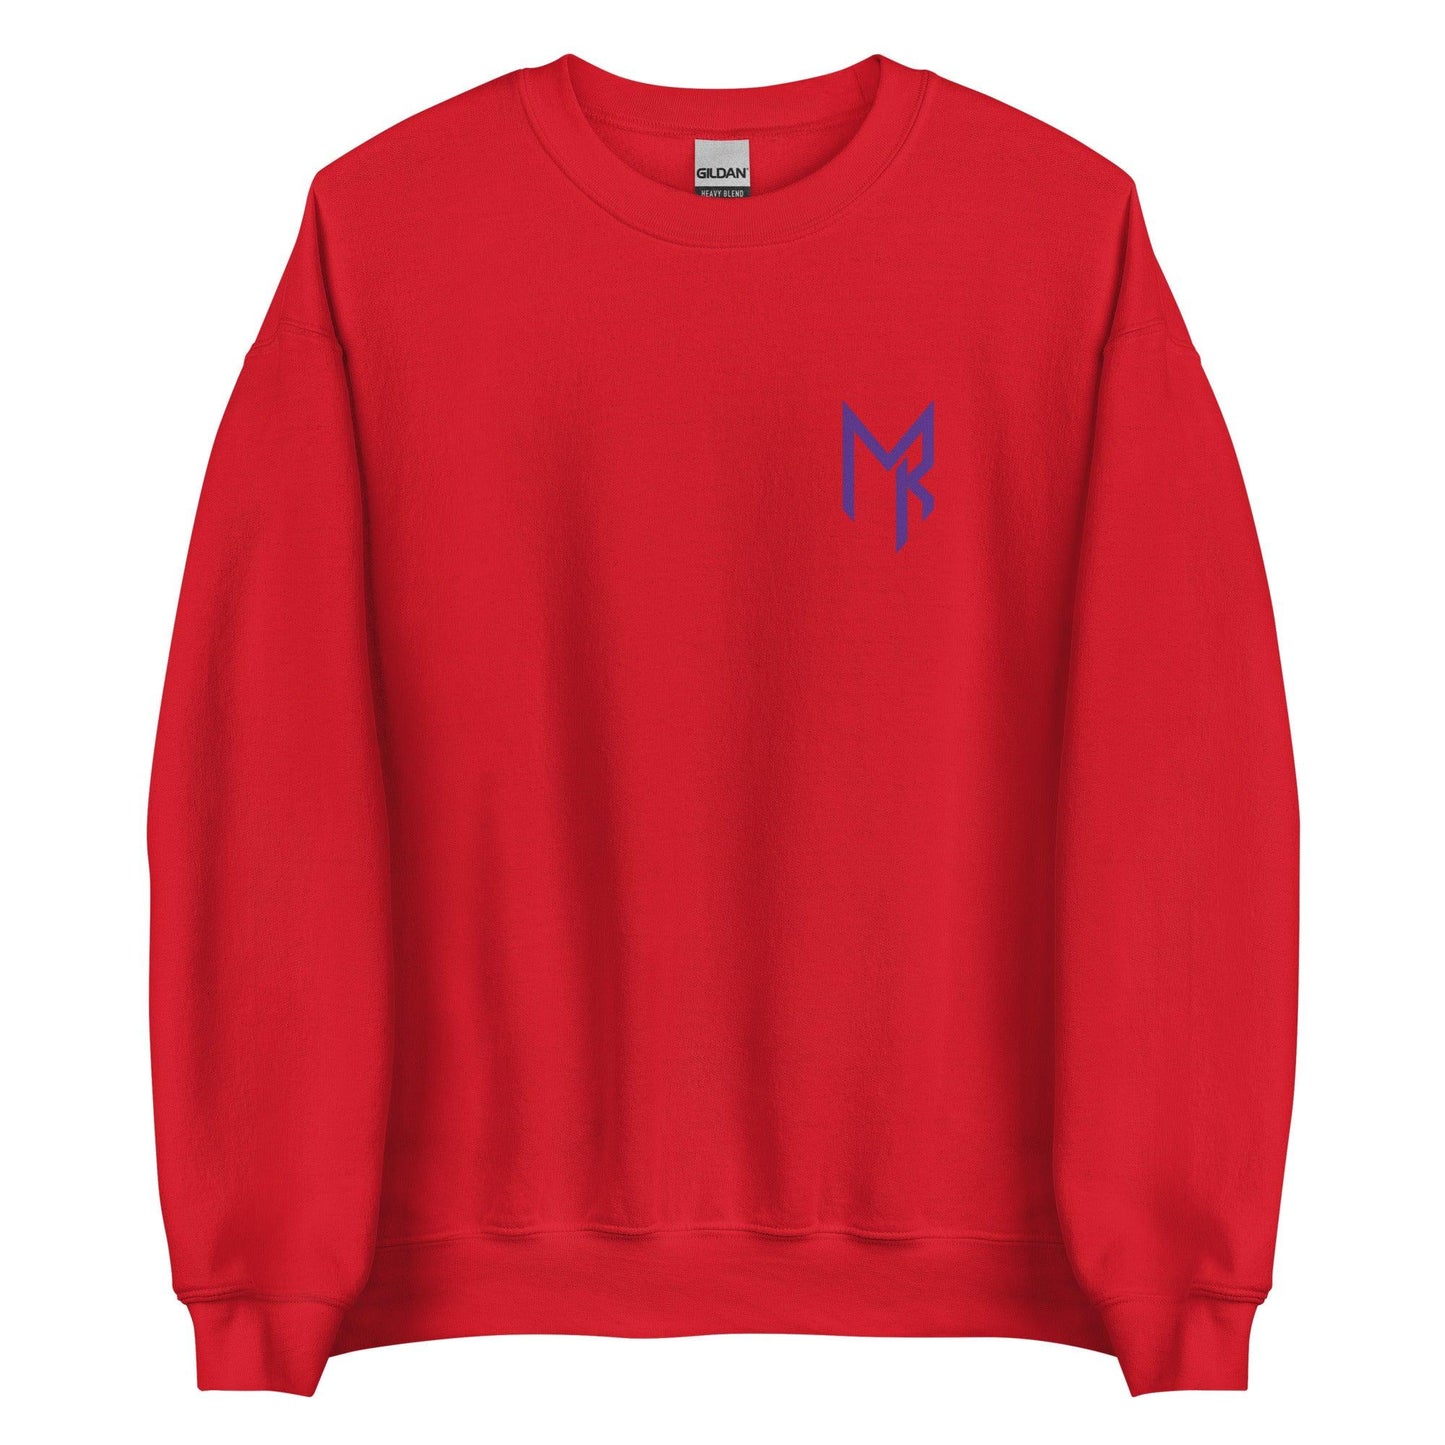 Macaleab Rich "Essential" Sweatshirt - Fan Arch